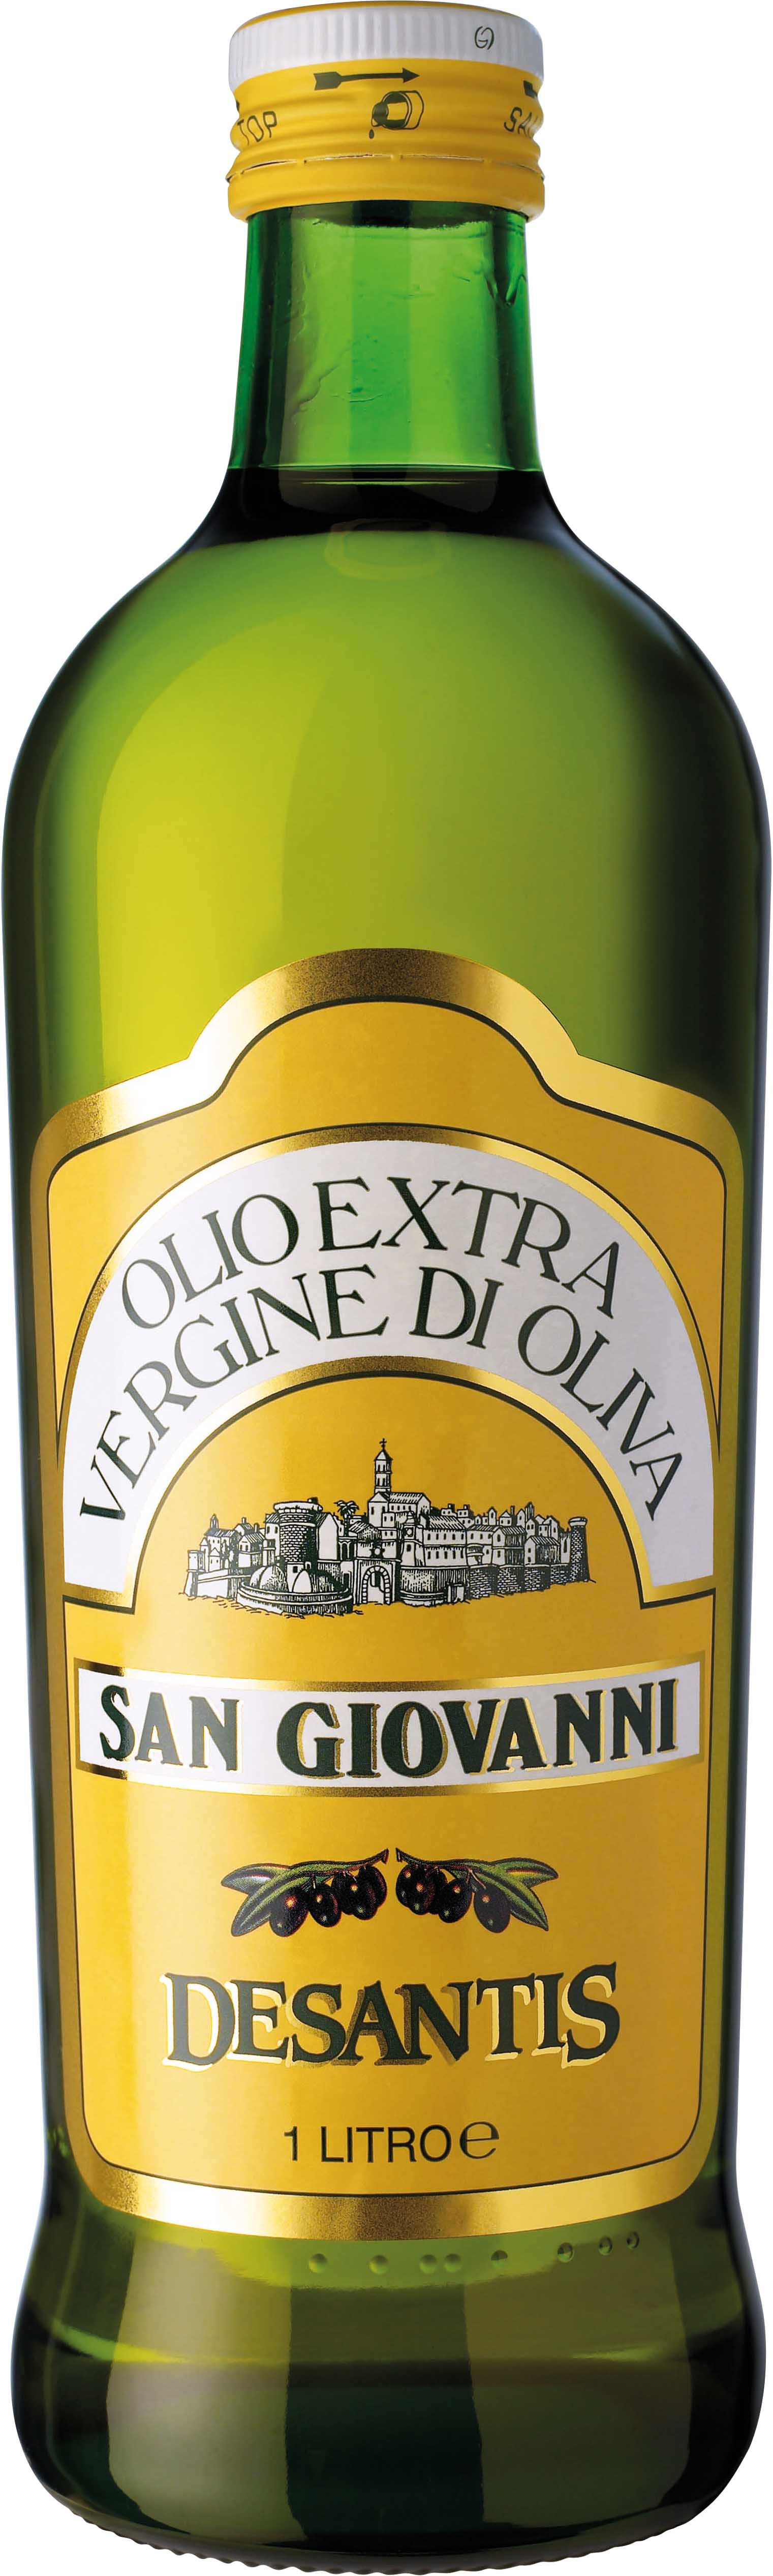 Desantis San Giovanni olio extra vergine 1 liter